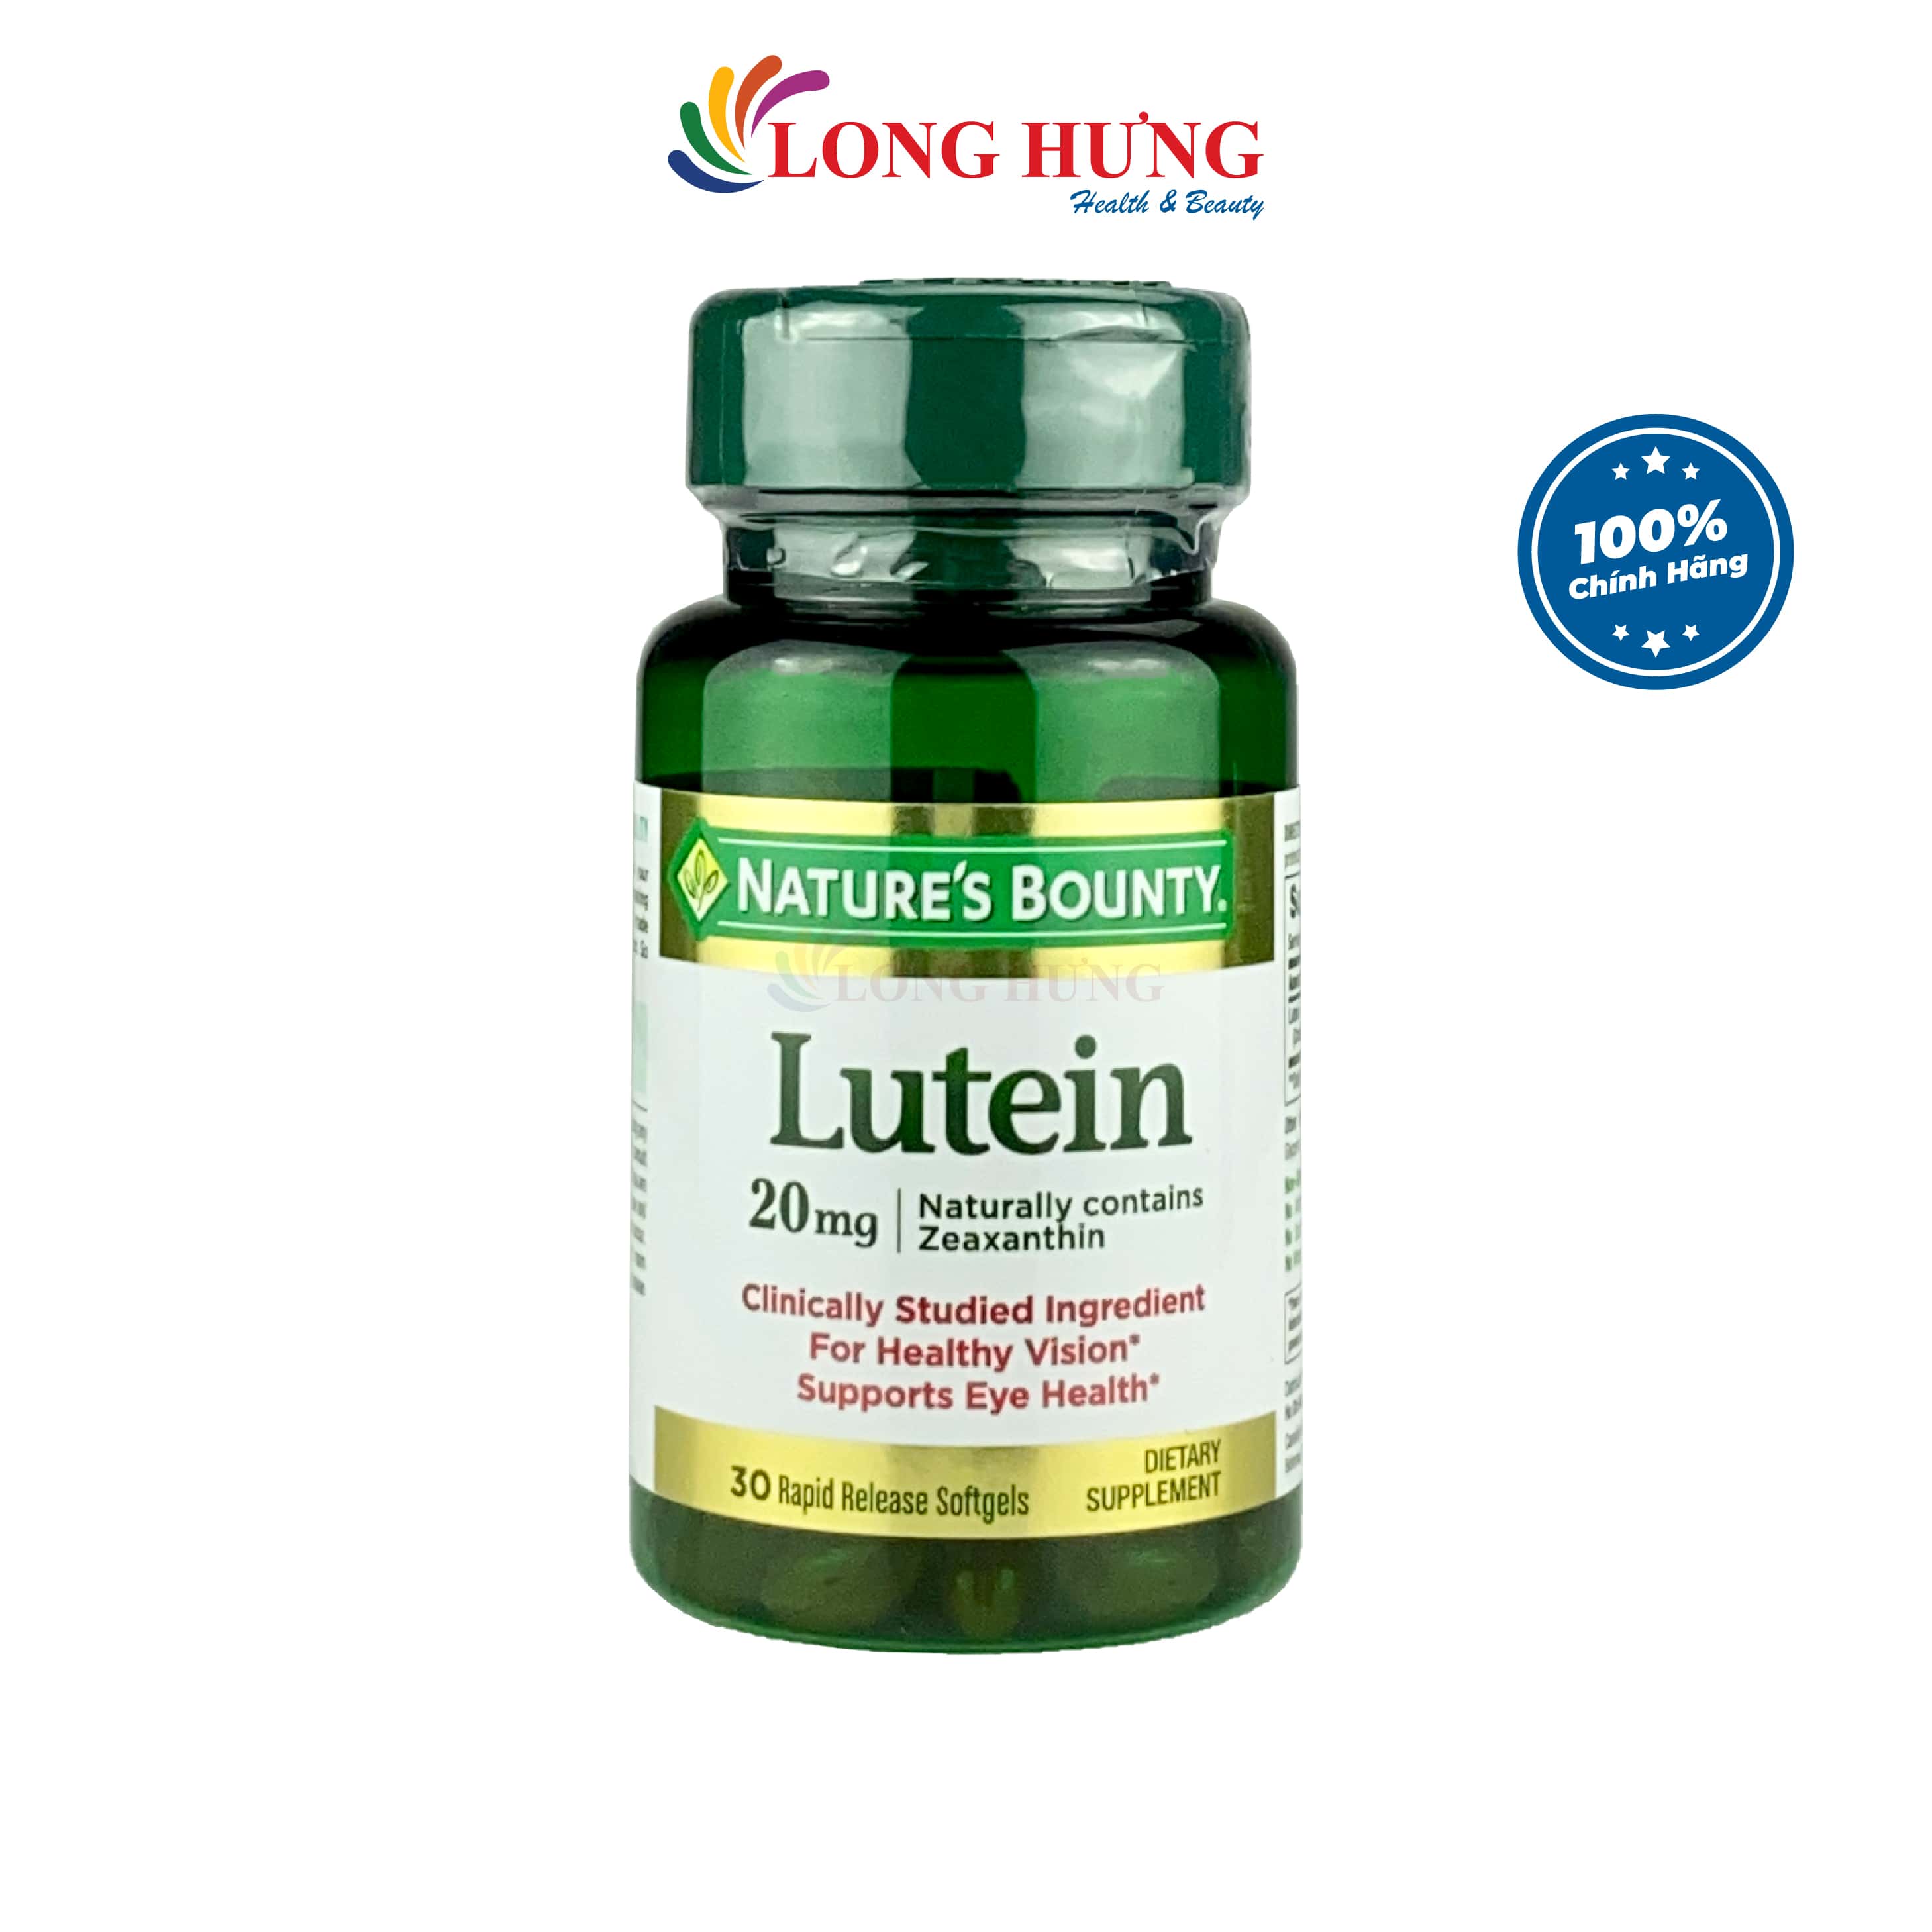 Viên uống Natures Bounty Lutein 20mg hỗ trợ tăng cường thị lực - Giúp mắt sáng khỏe Tăng cường thị lực Giảm thoái hoá điểm vàng Hạn chế mỏi mắt